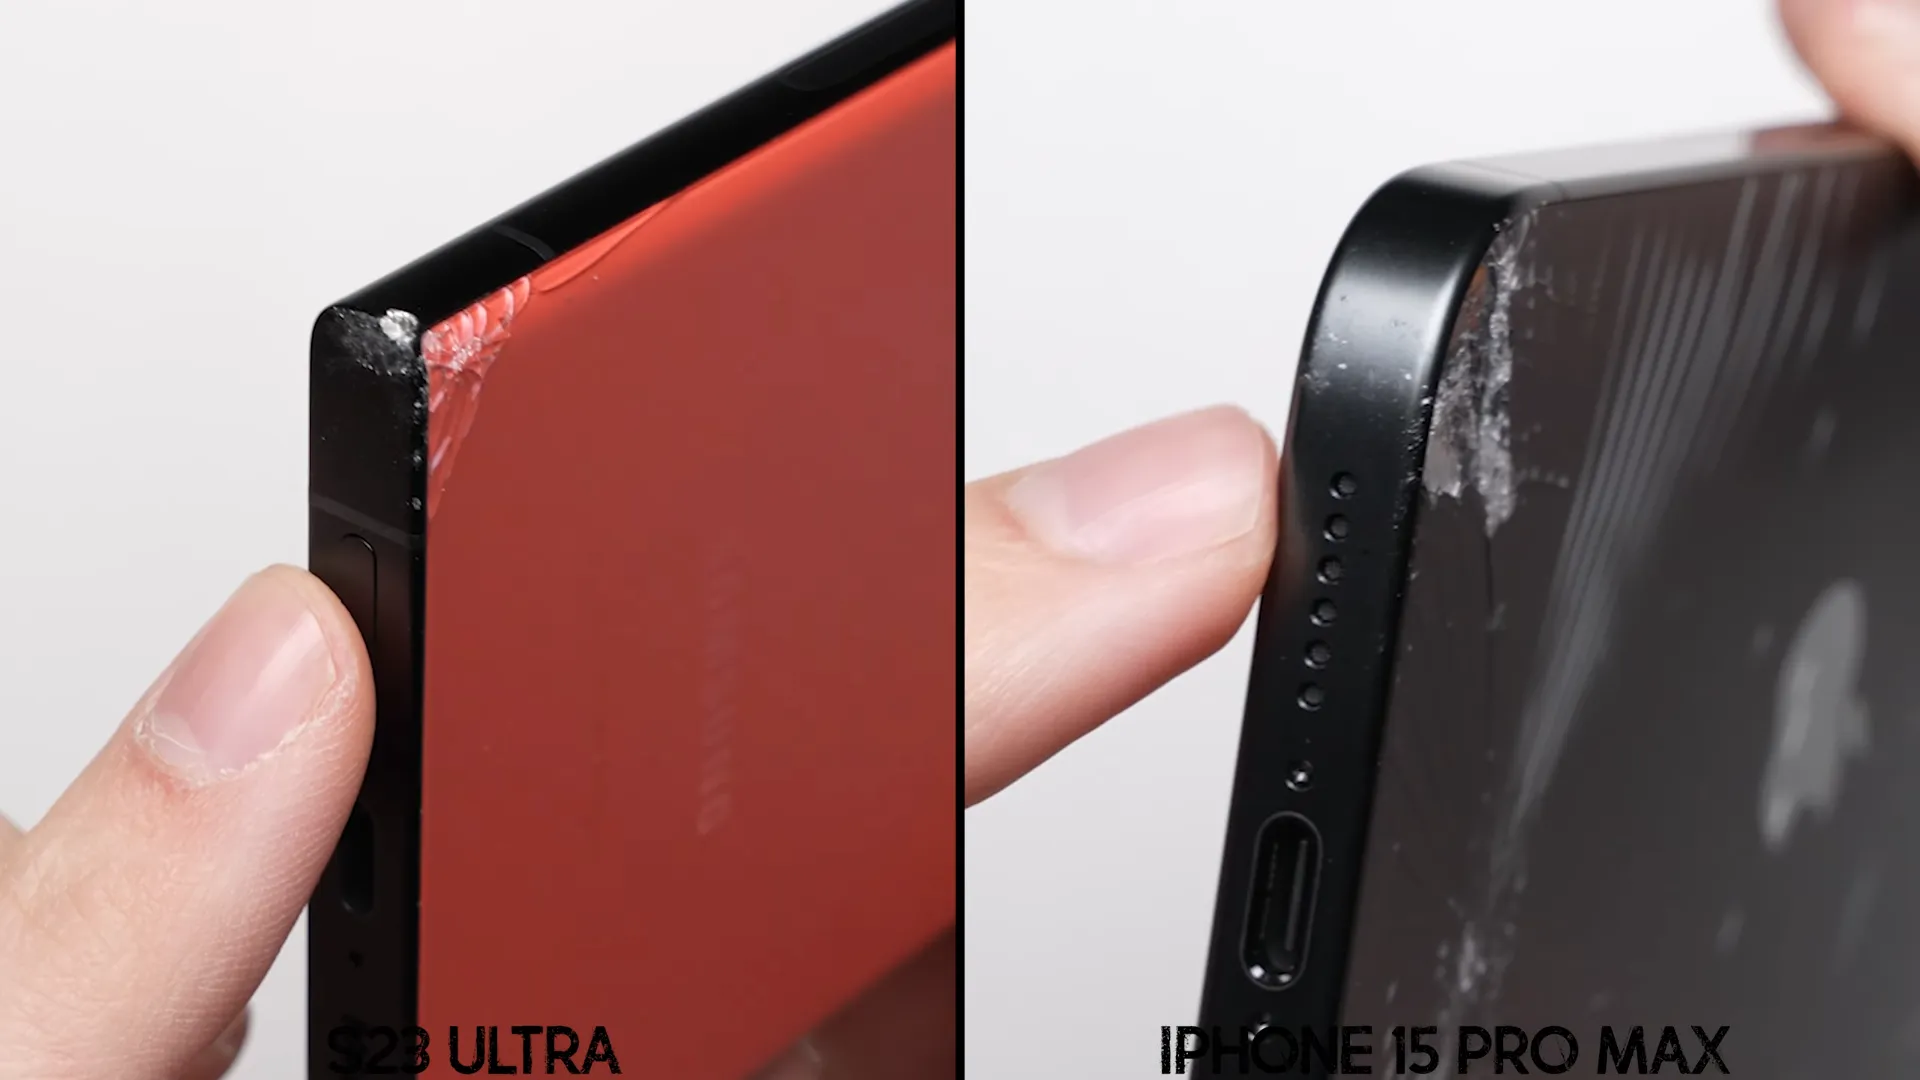 Galaxy S23 Ultra chiến thắng iPhone 15 Pro Max trong bài kiểm tra độ bền khi thả rơi hai thiết bị